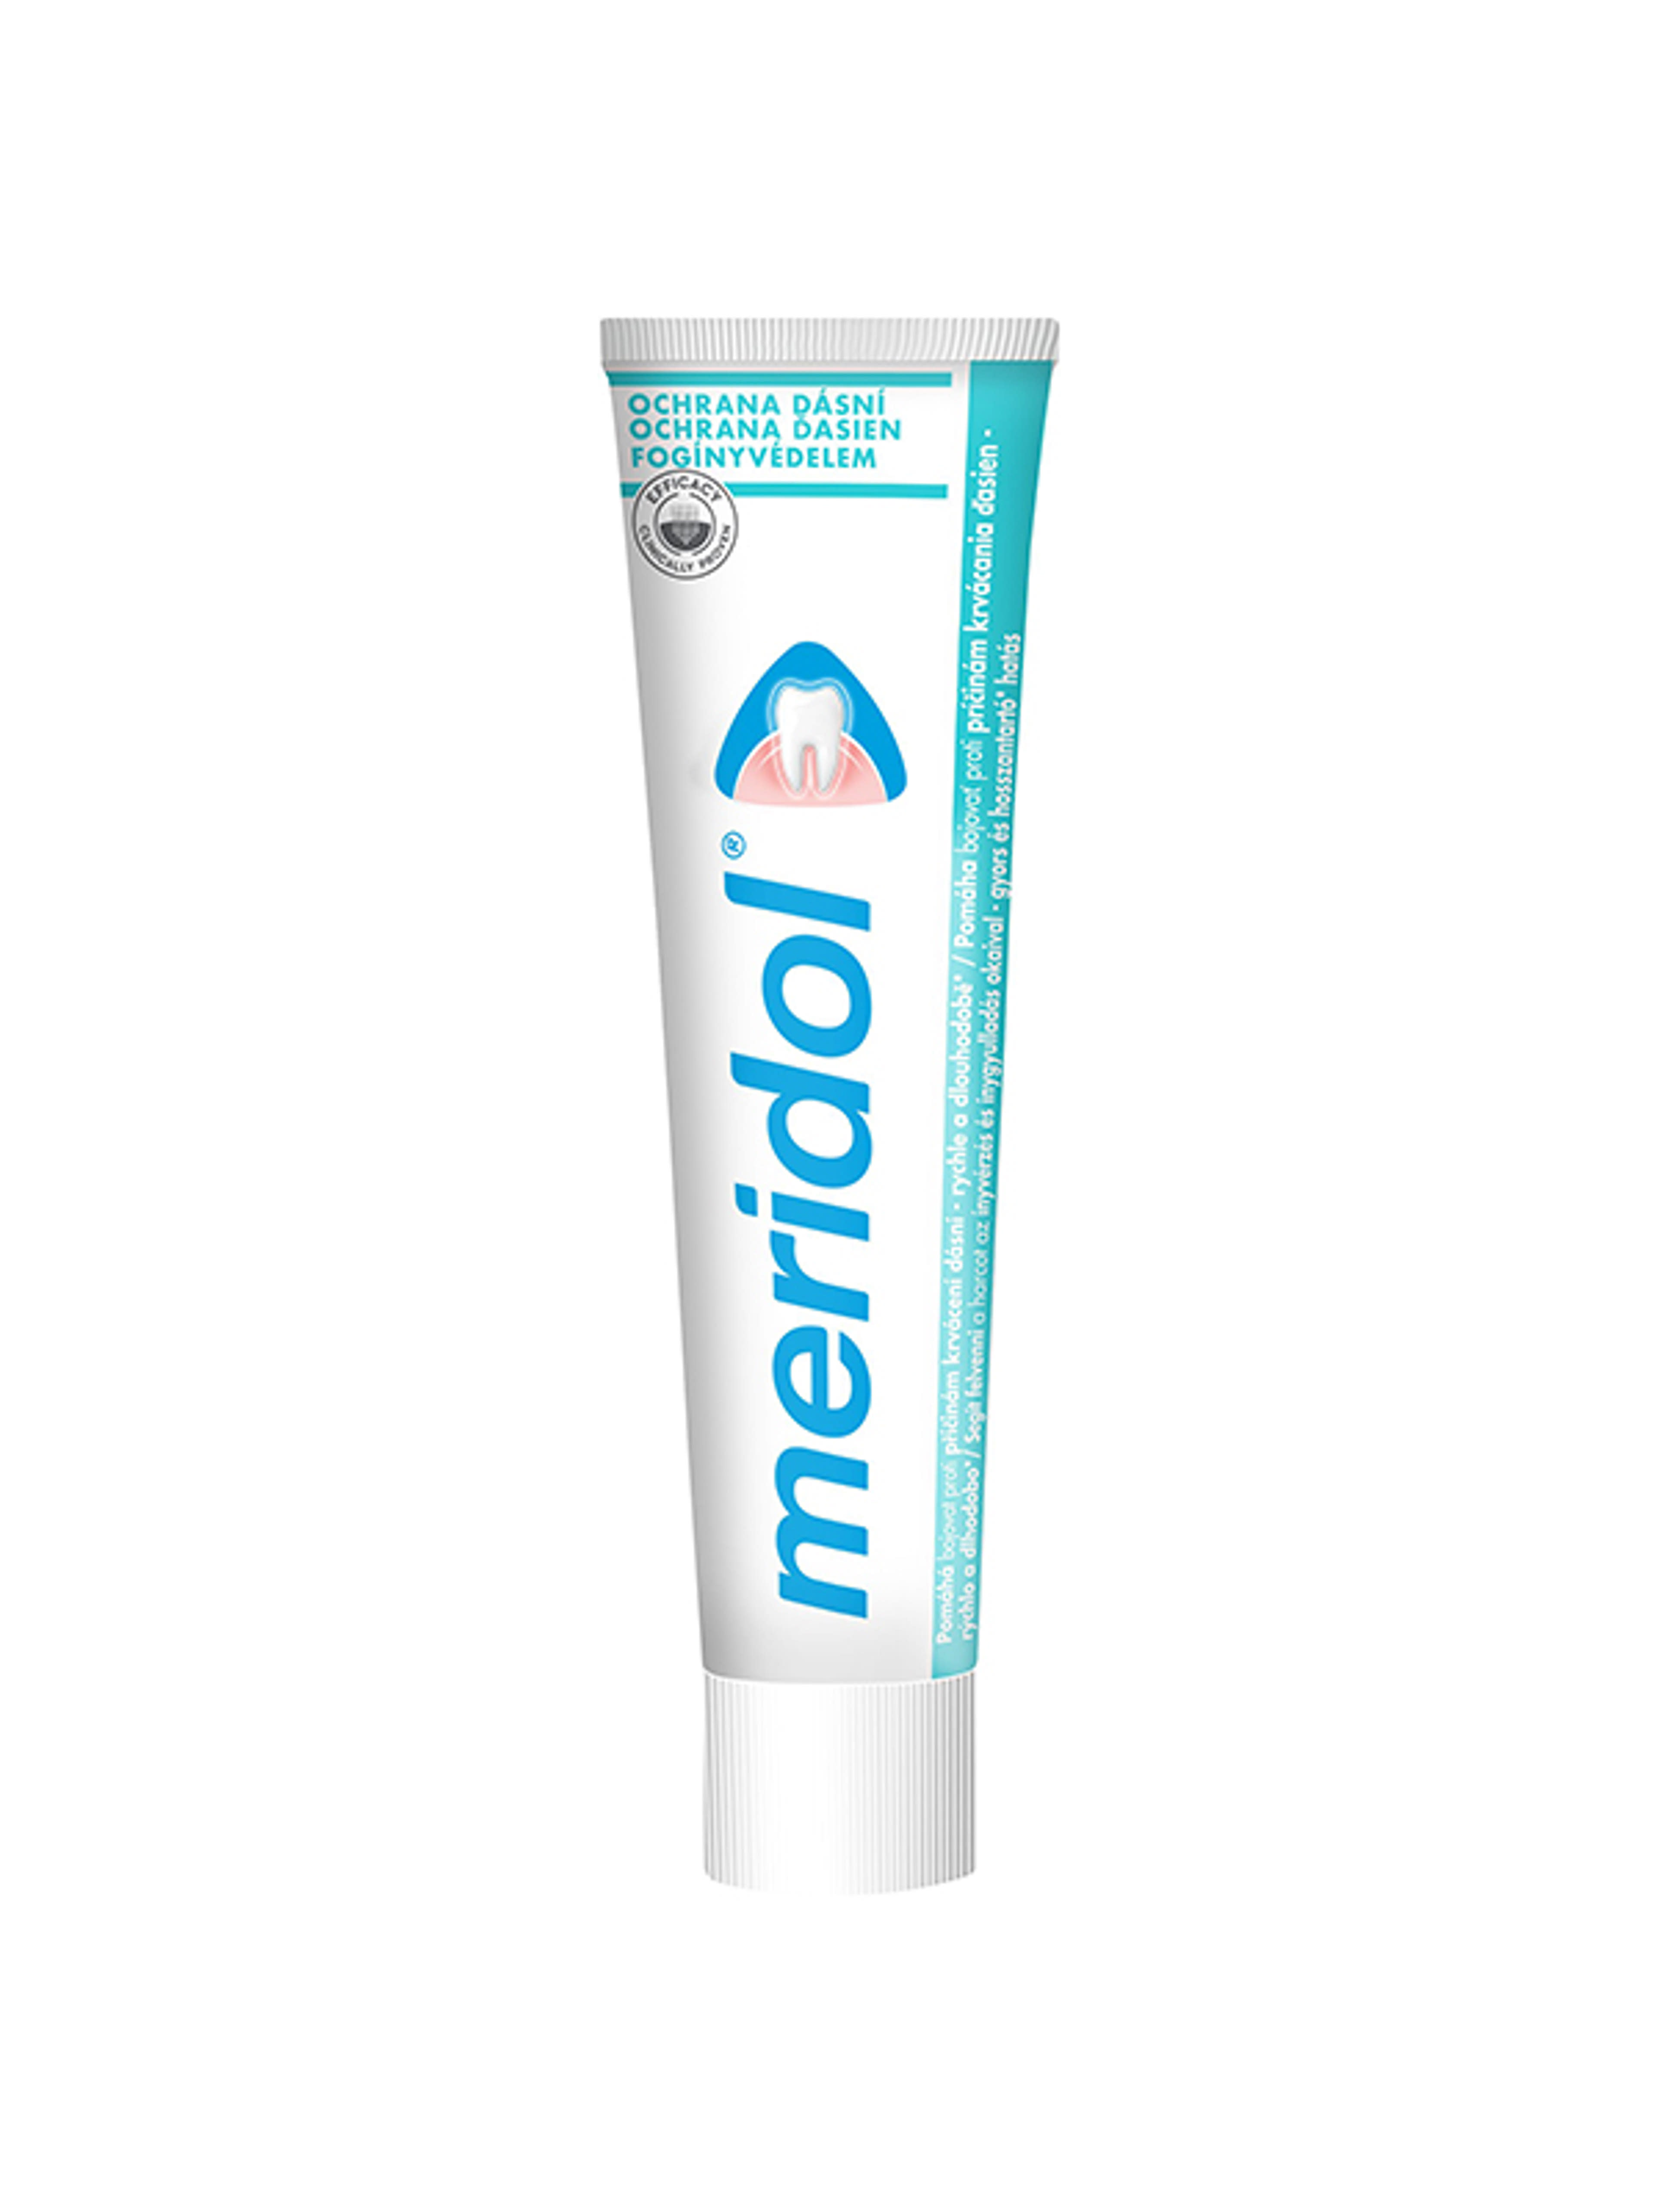 Meridol Gum Protection fogkrém az íny védelmére és ínyvérzés ellen - 75 ml-15